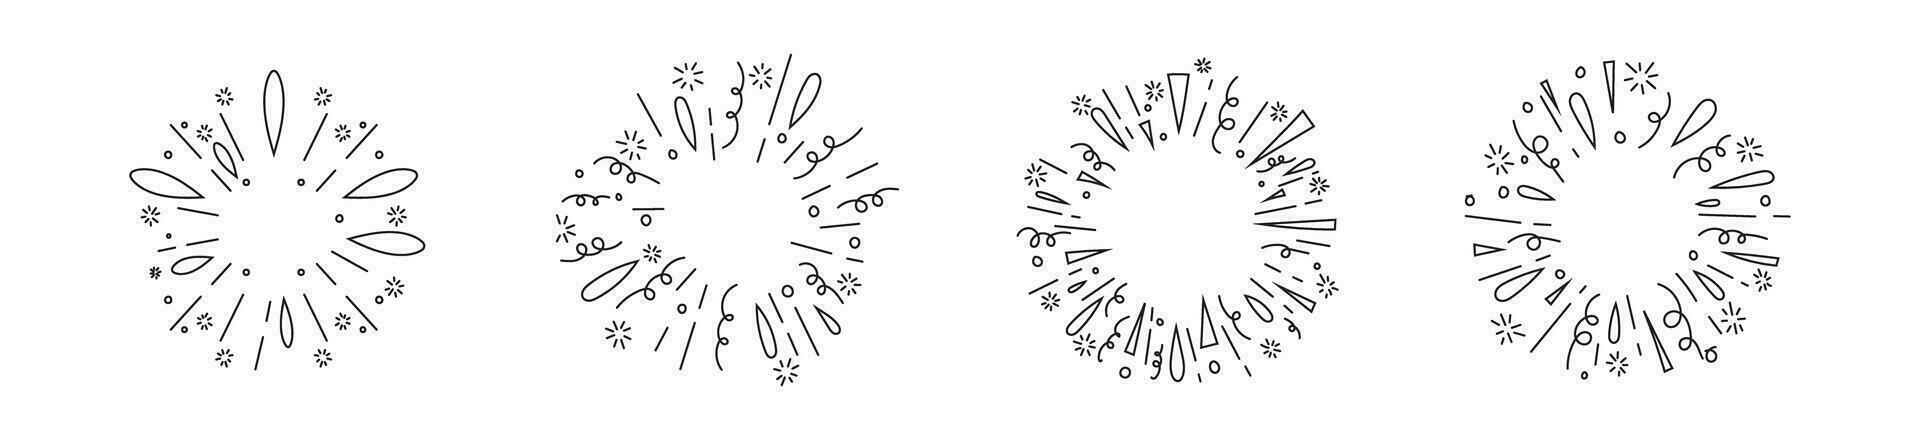 radial élément main drwing dessin animé Soleil éclater bande dessinée fête confettis esquisser vecteur